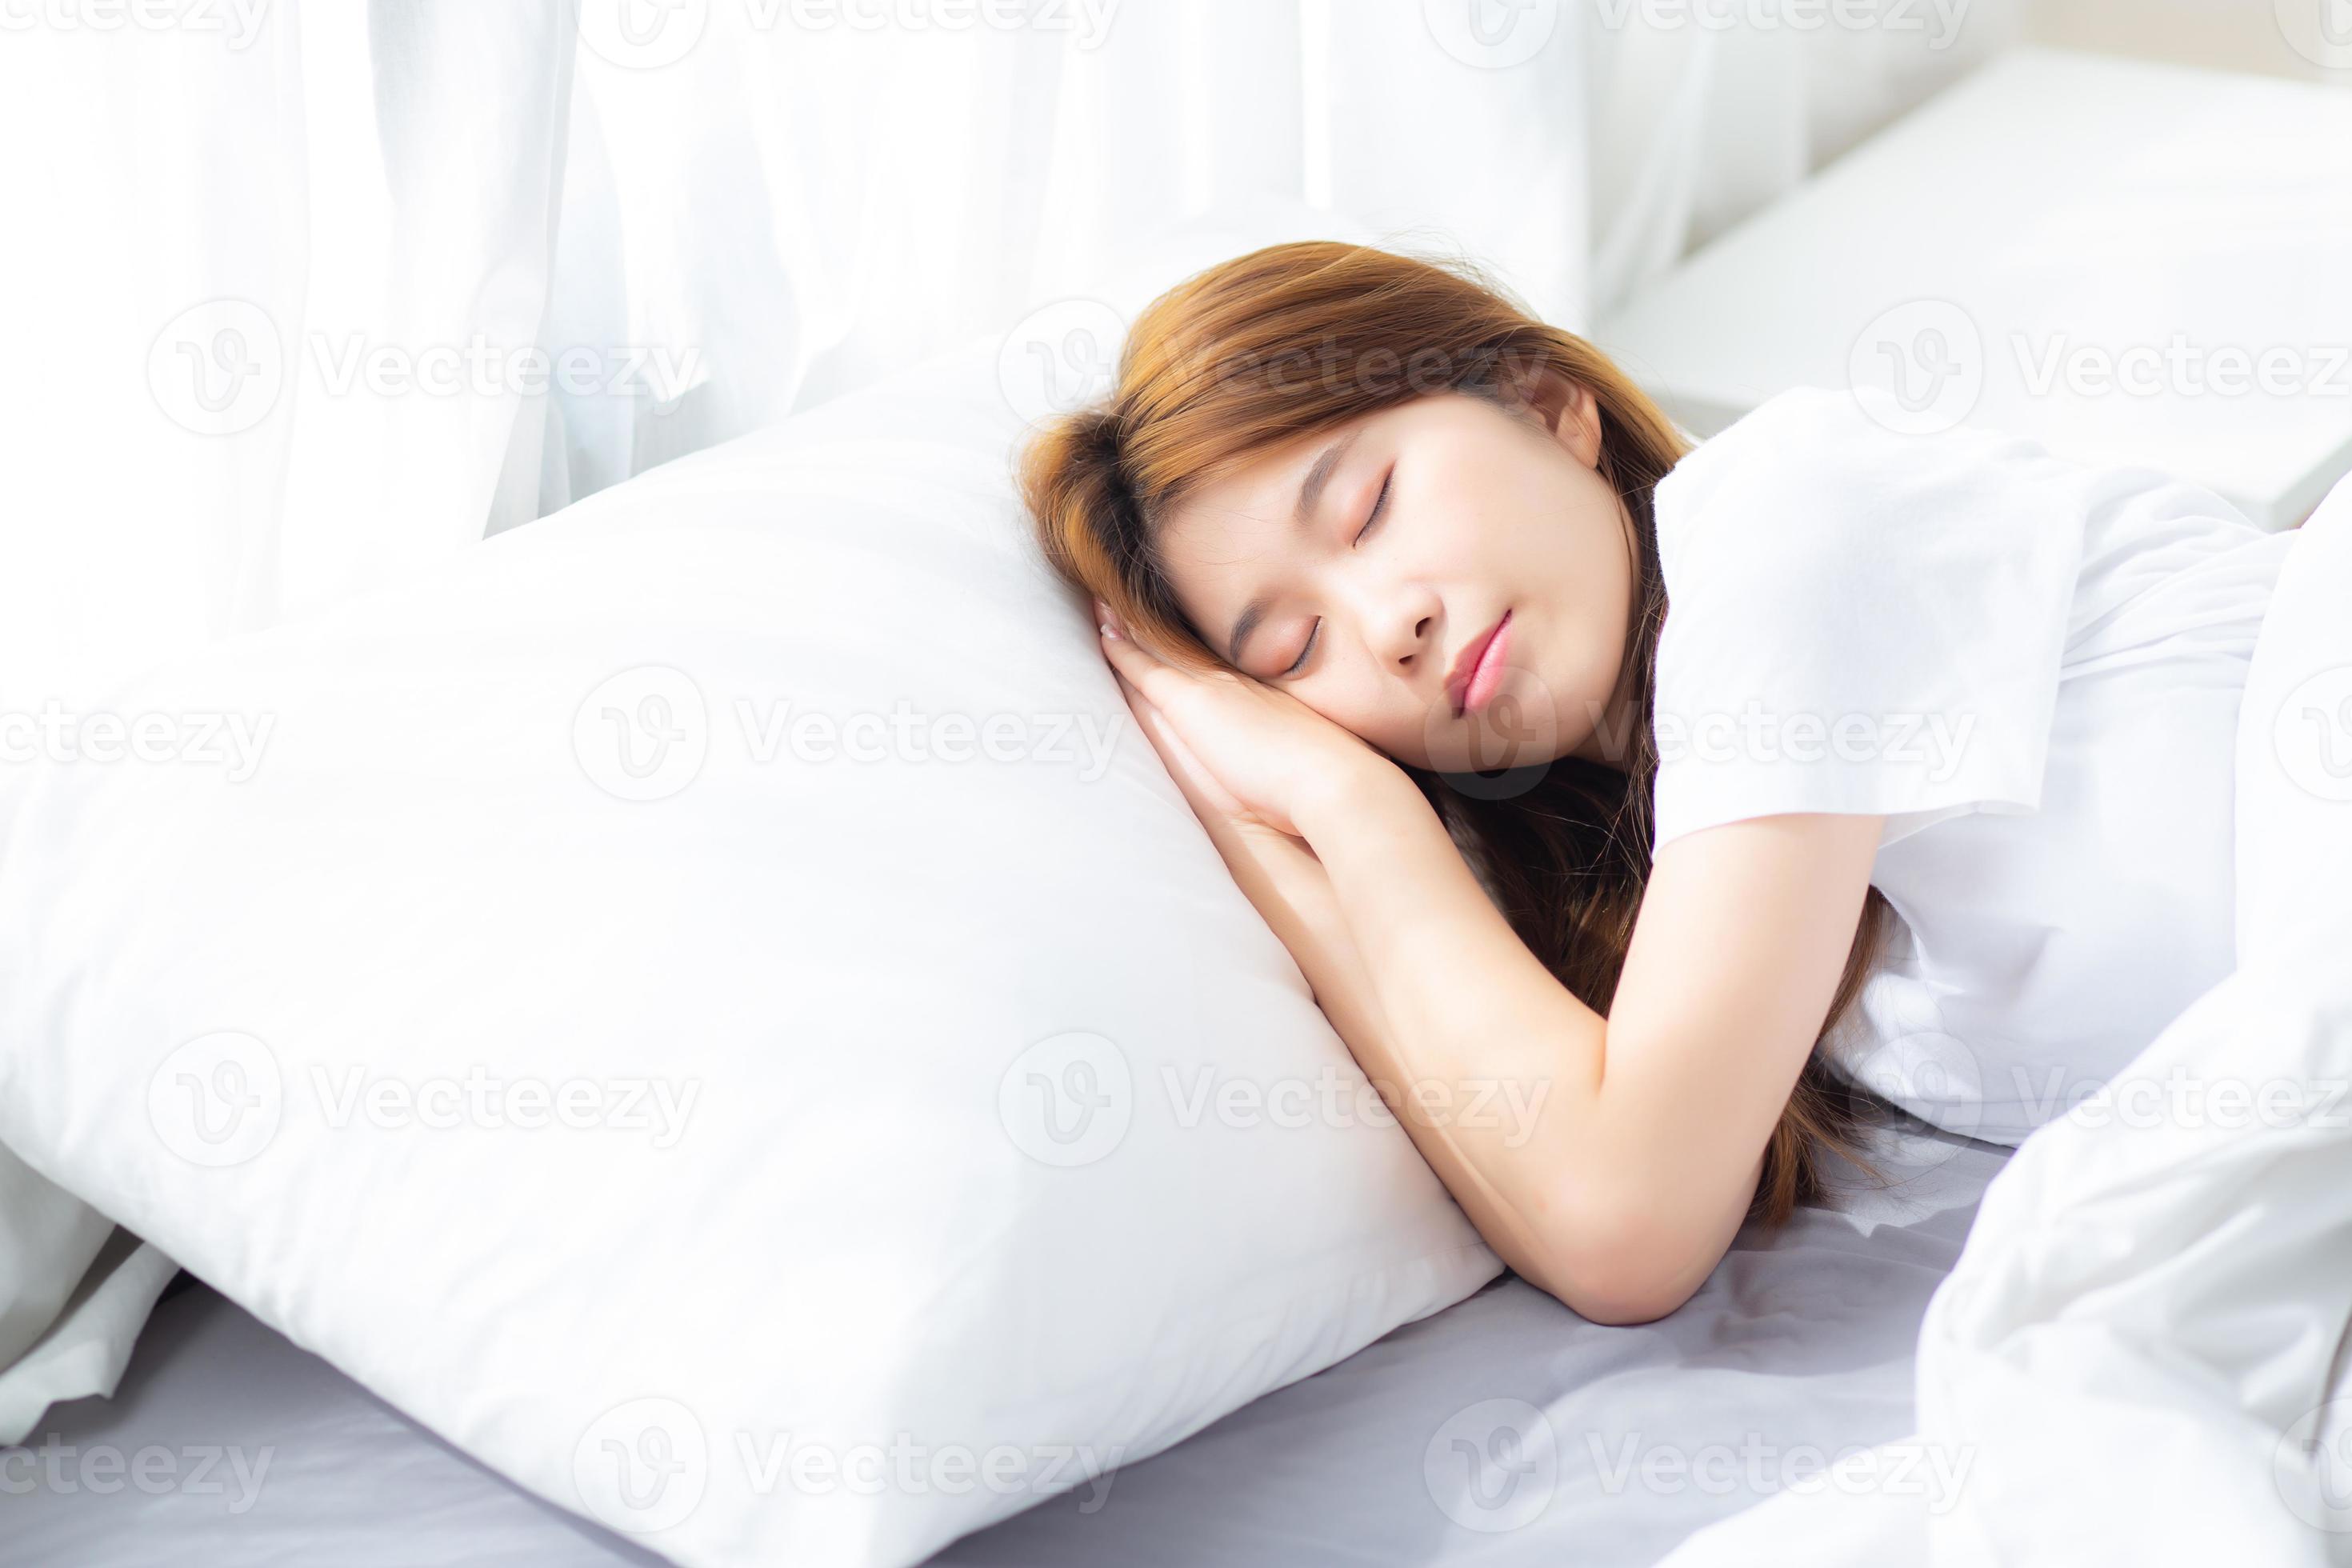 ego Hick rustig aan jonge aziatische vrouw slaap liggend in bed met hoofd op kussen. 3460085  Stockfoto